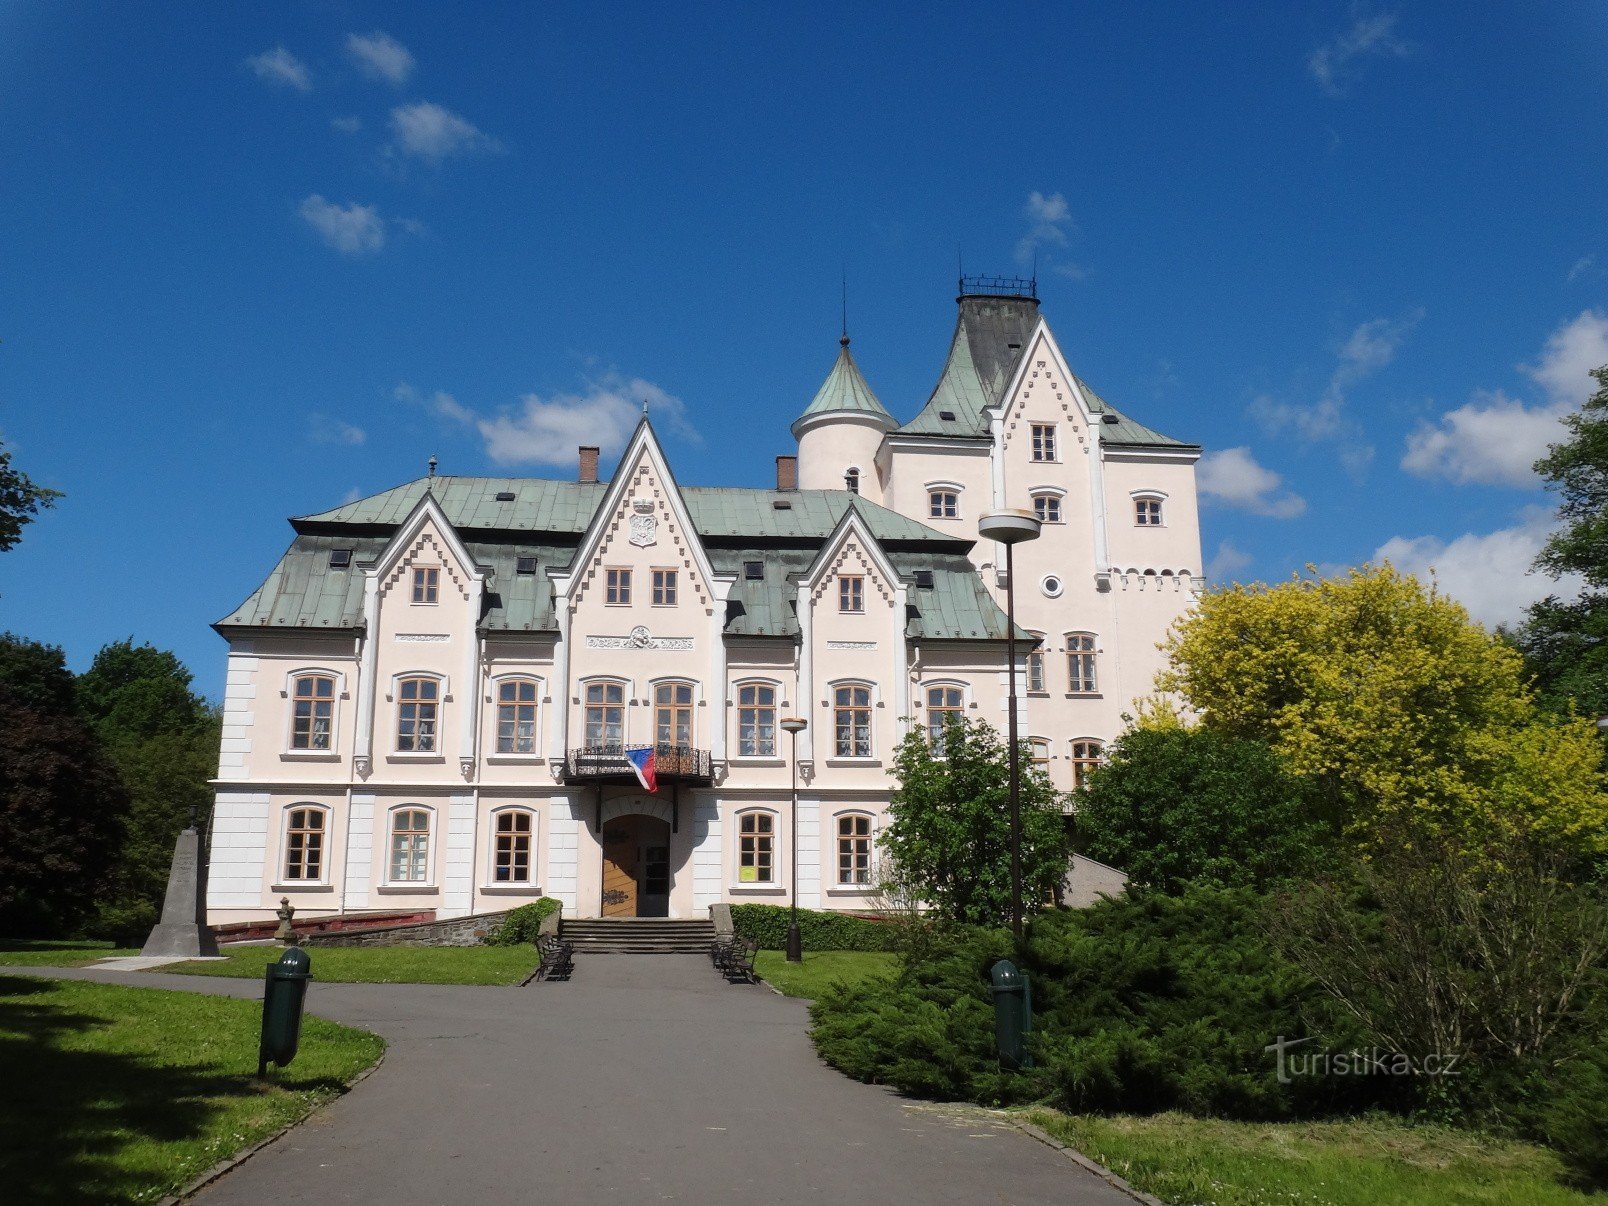 Νέο Κάστρο Studenka